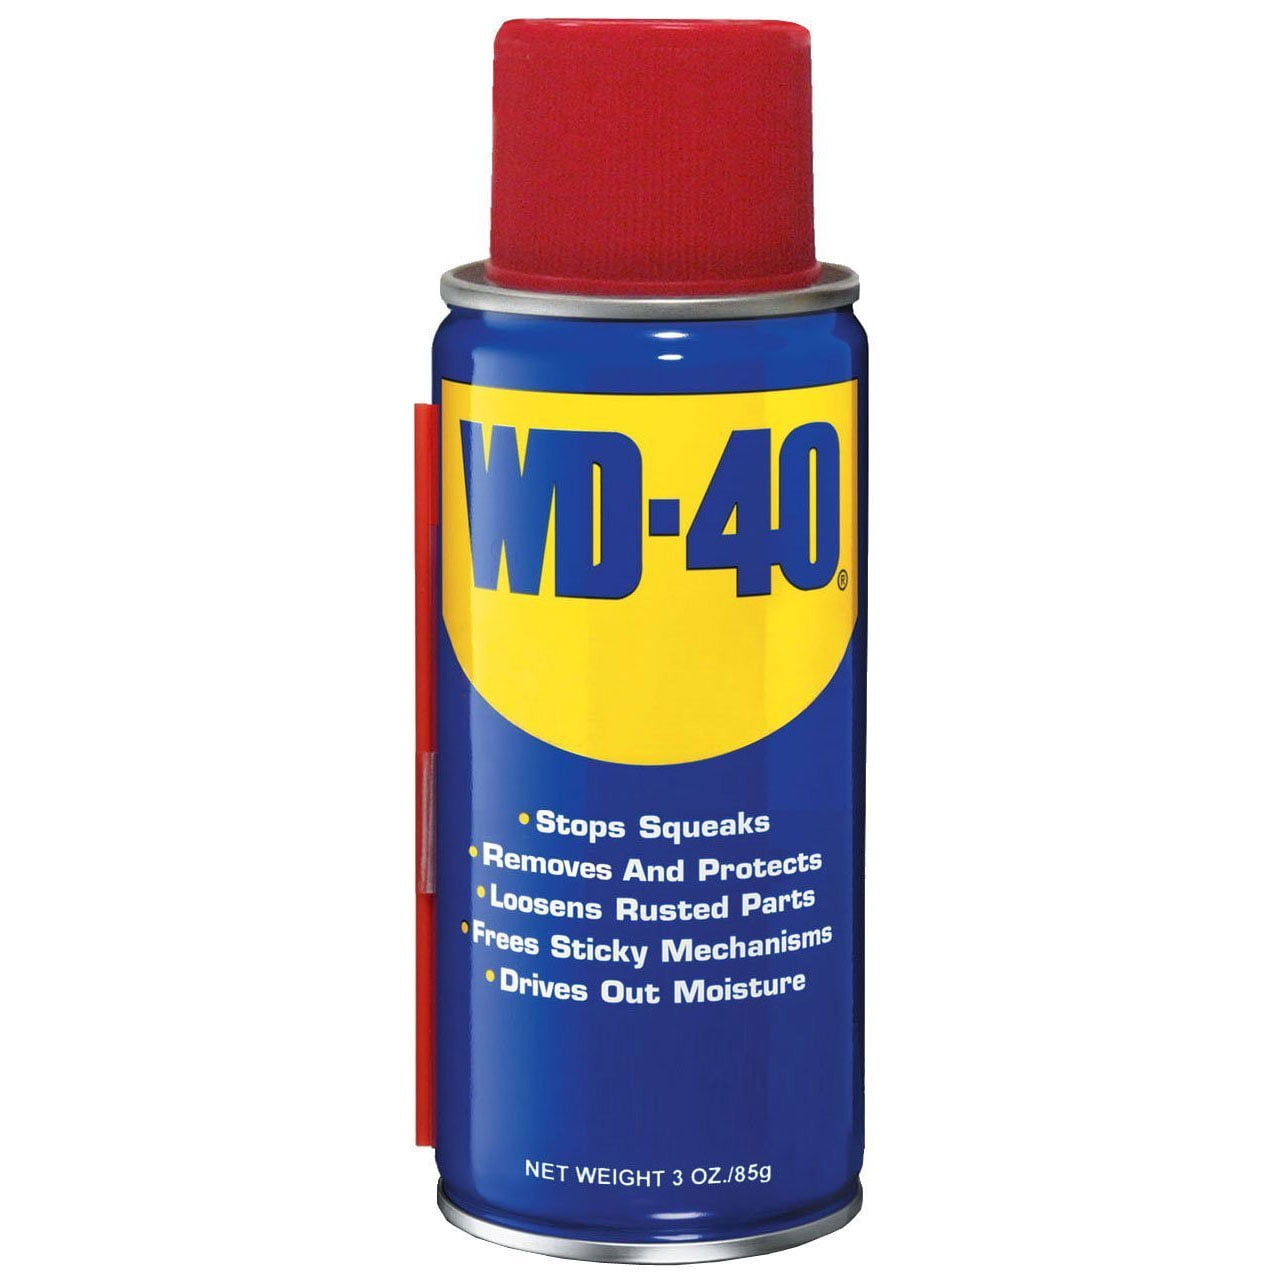 Фото вд. WD 40. Очиститель WD-40 100 мл. Универсальная смазка WD-40, 100 мл.. Wd0000 WD-40 универсальная смазка - аэрозоль (100 мл).